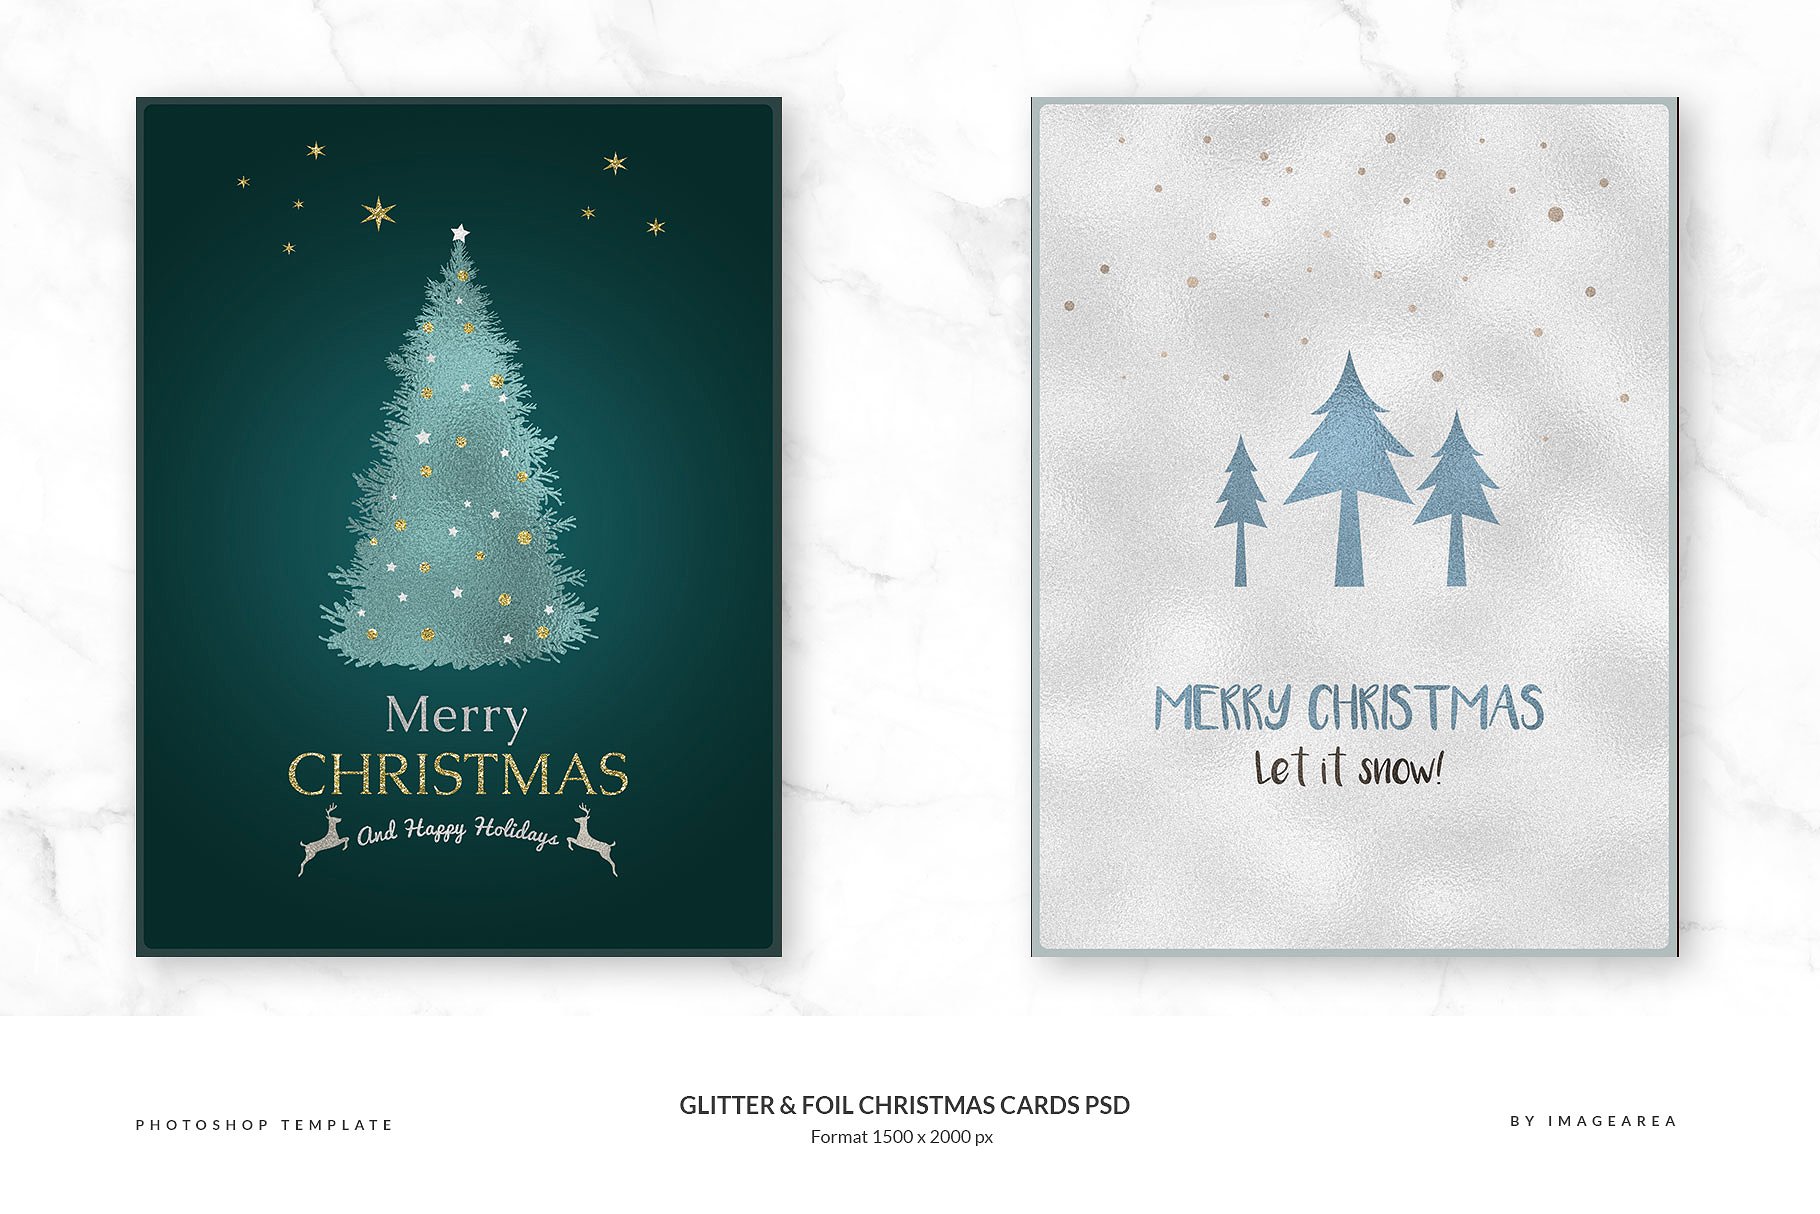 闪粉&金箔圣诞卡PSD模板合集 Glitter & Foil Christmas Cards PSD插图(2)